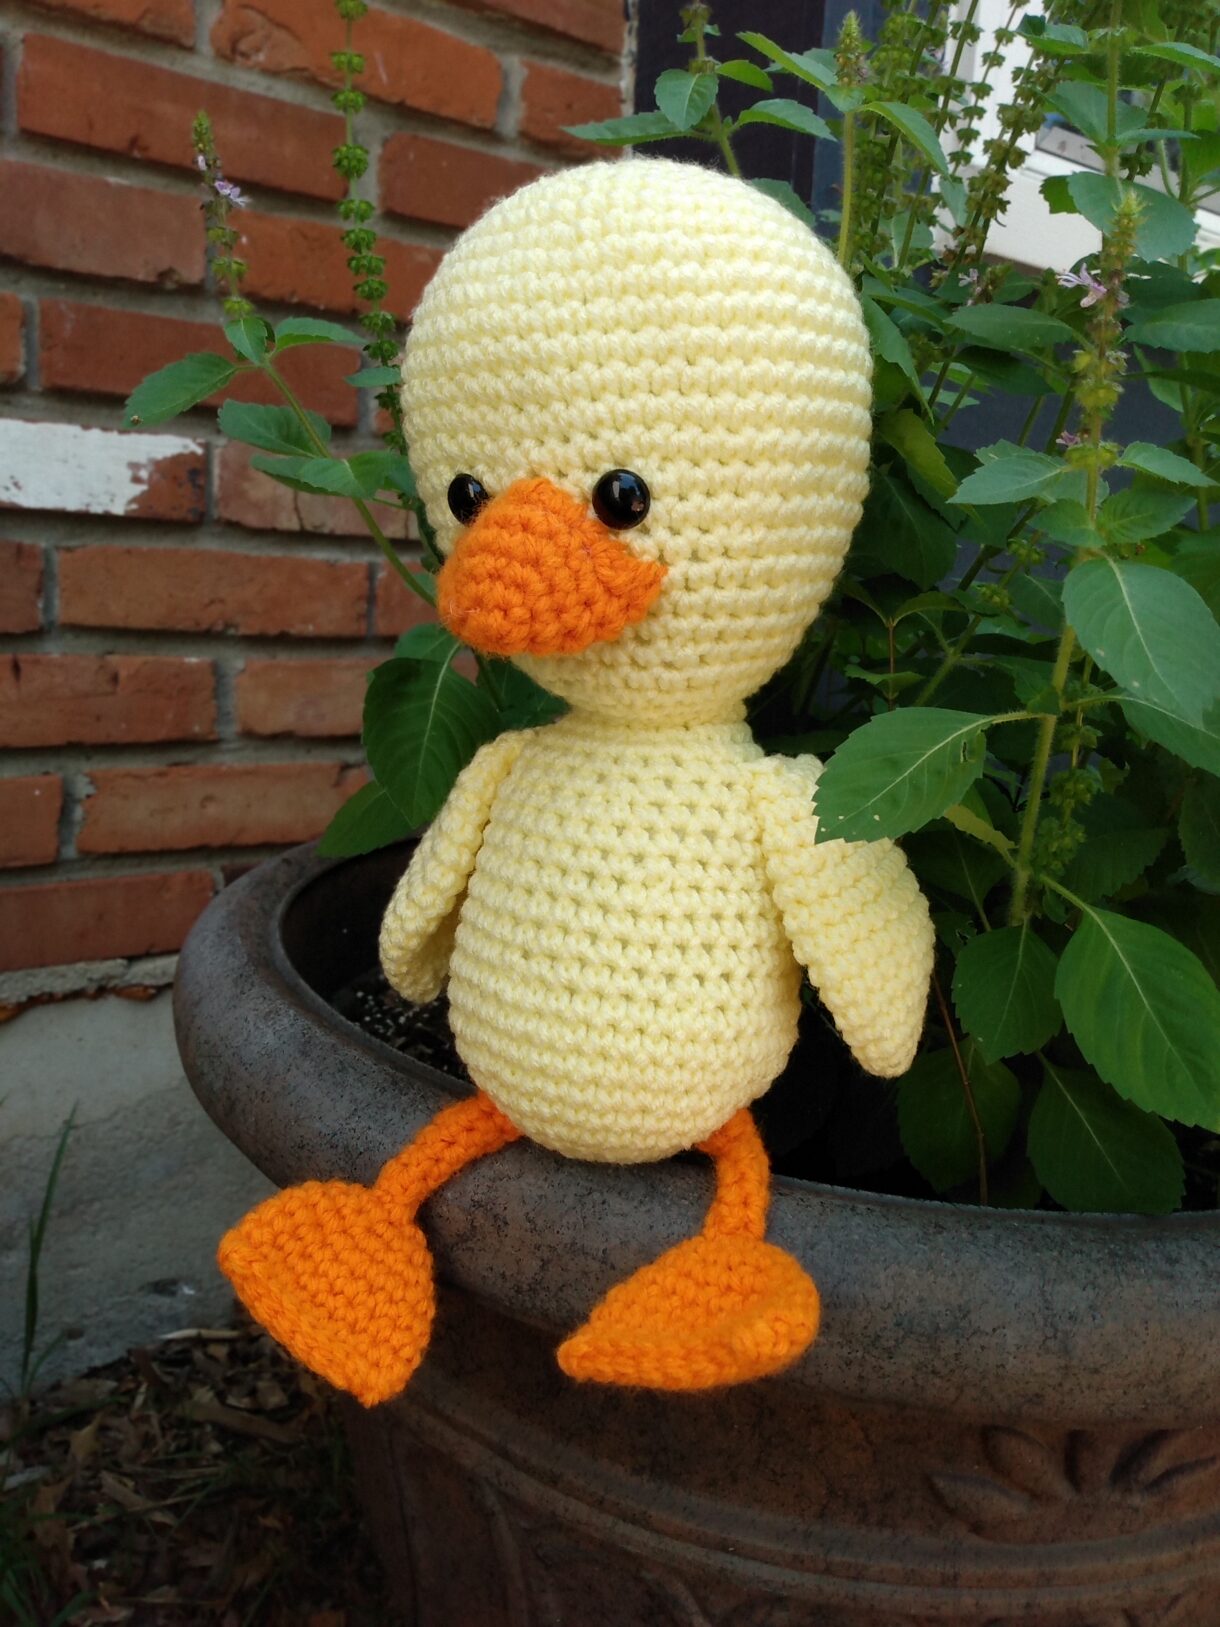 Stuffed duck